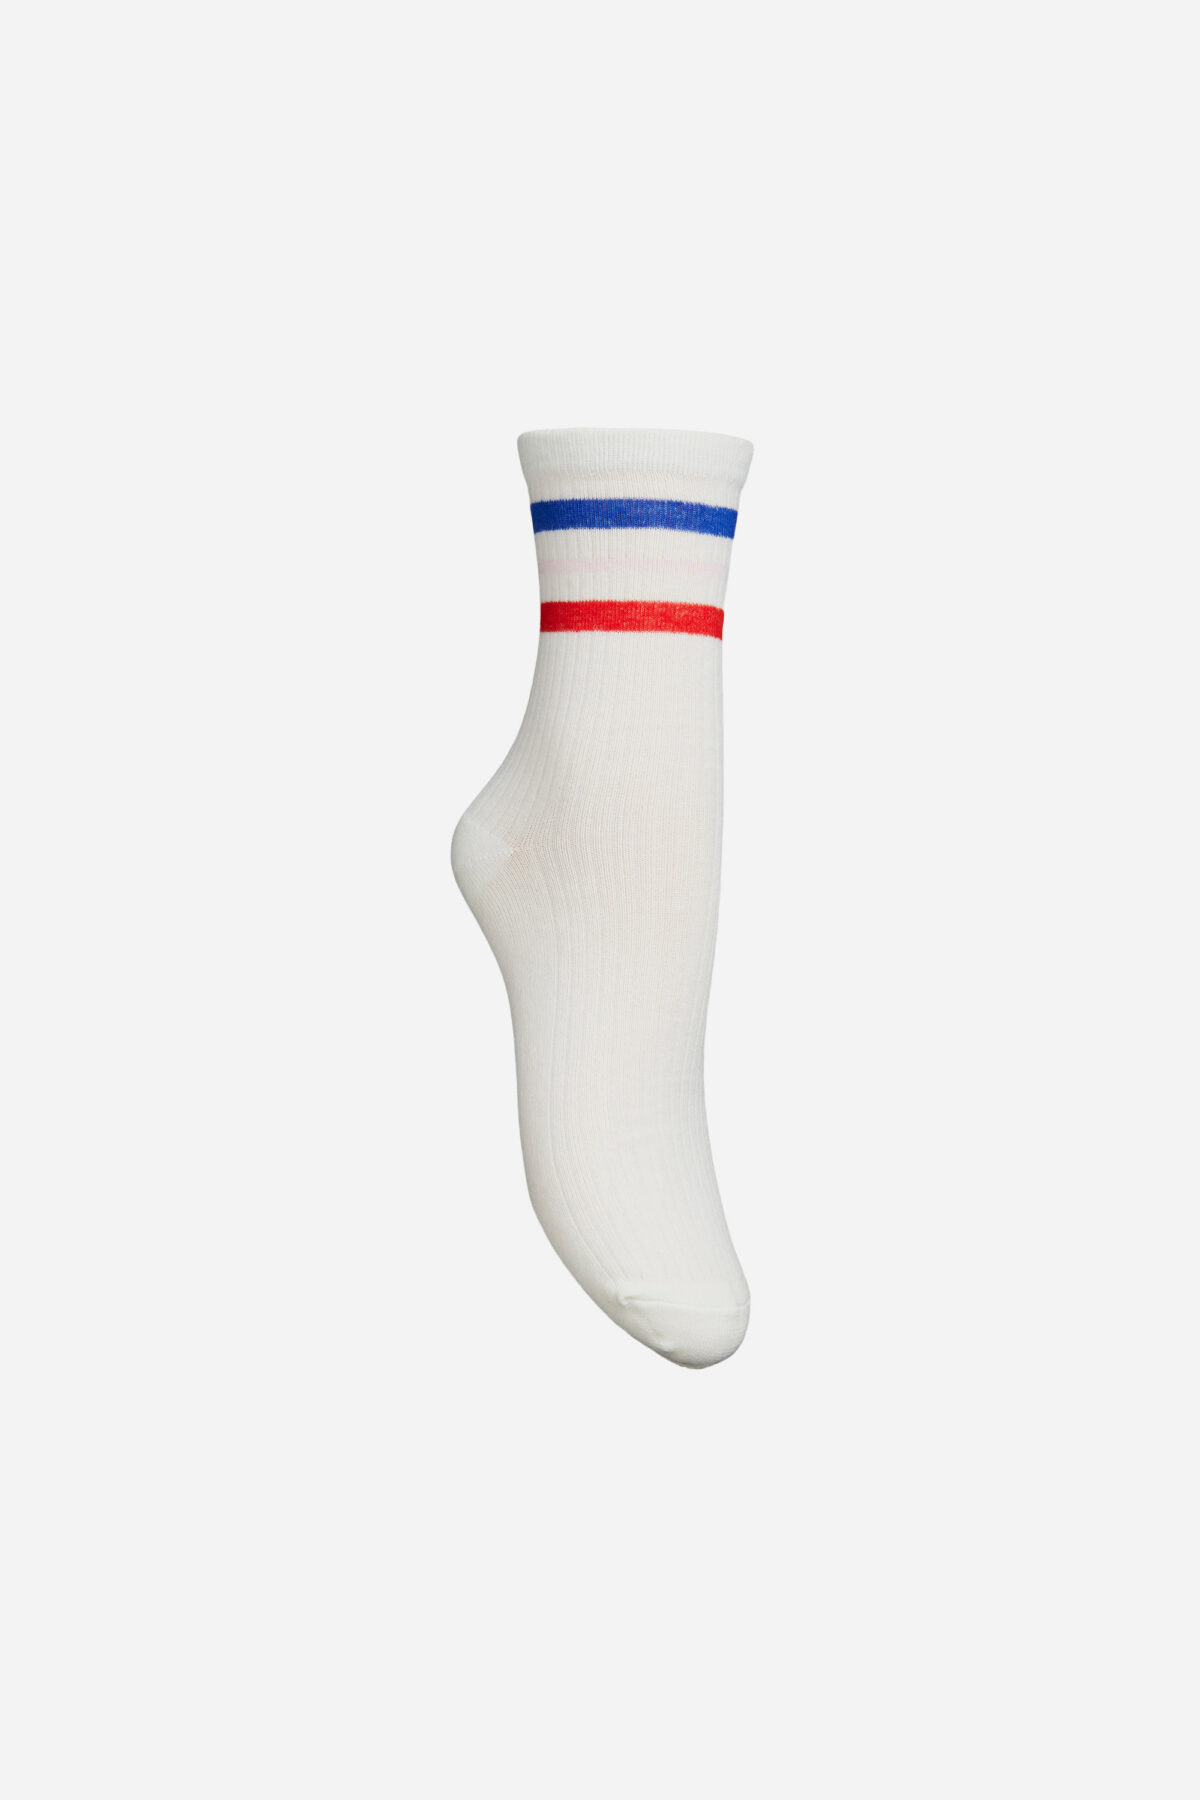 janis-white-striped-socks-becksondergaard-matchboxathens